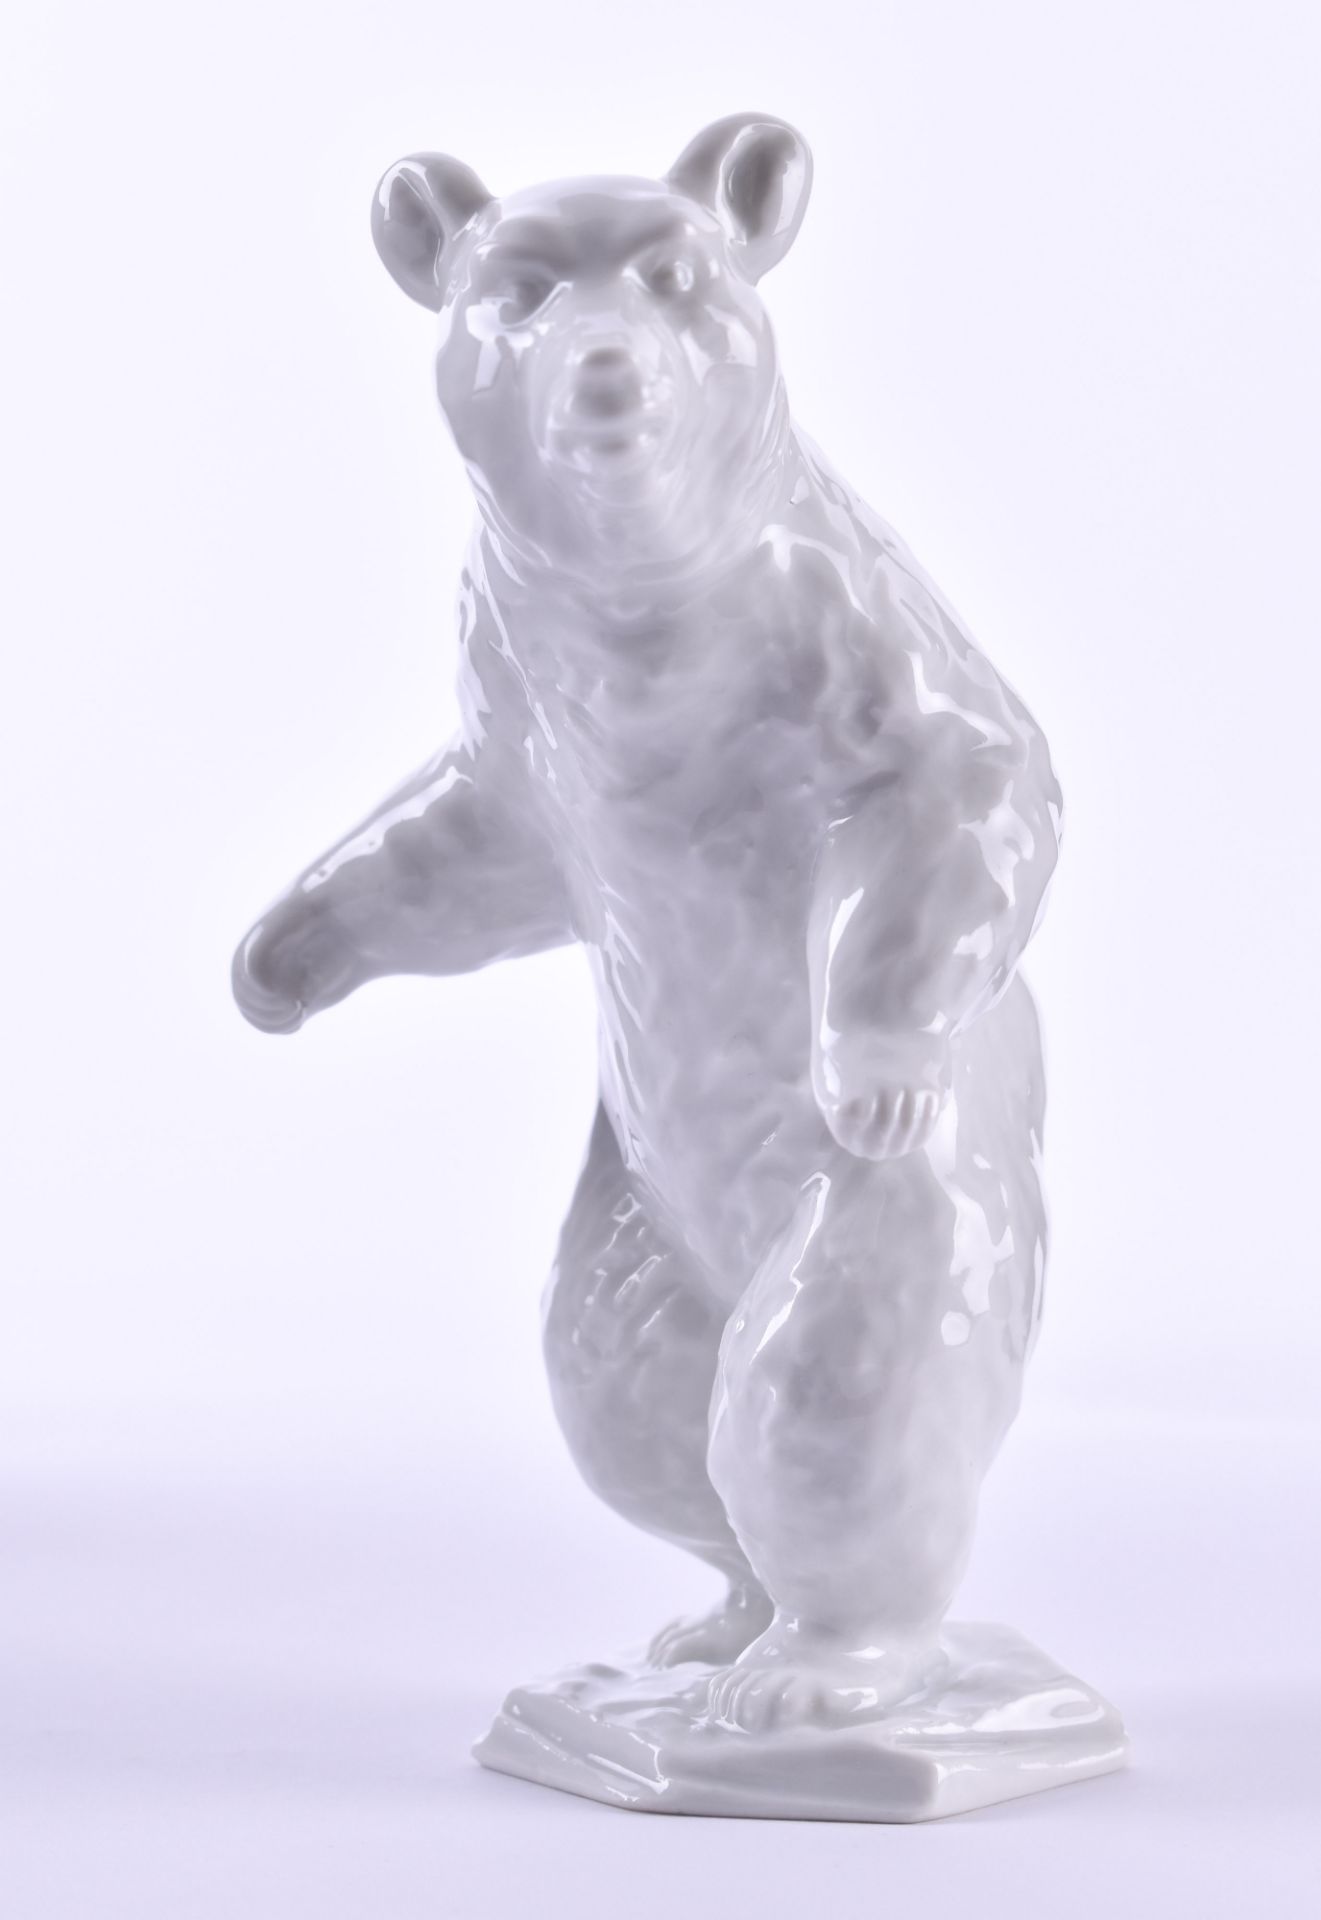 Figure Rosenthalpolar bear, bottom mark, height: 13.5 cmFigur RosenthalEisbär, Bodenmarke, H: 13,5